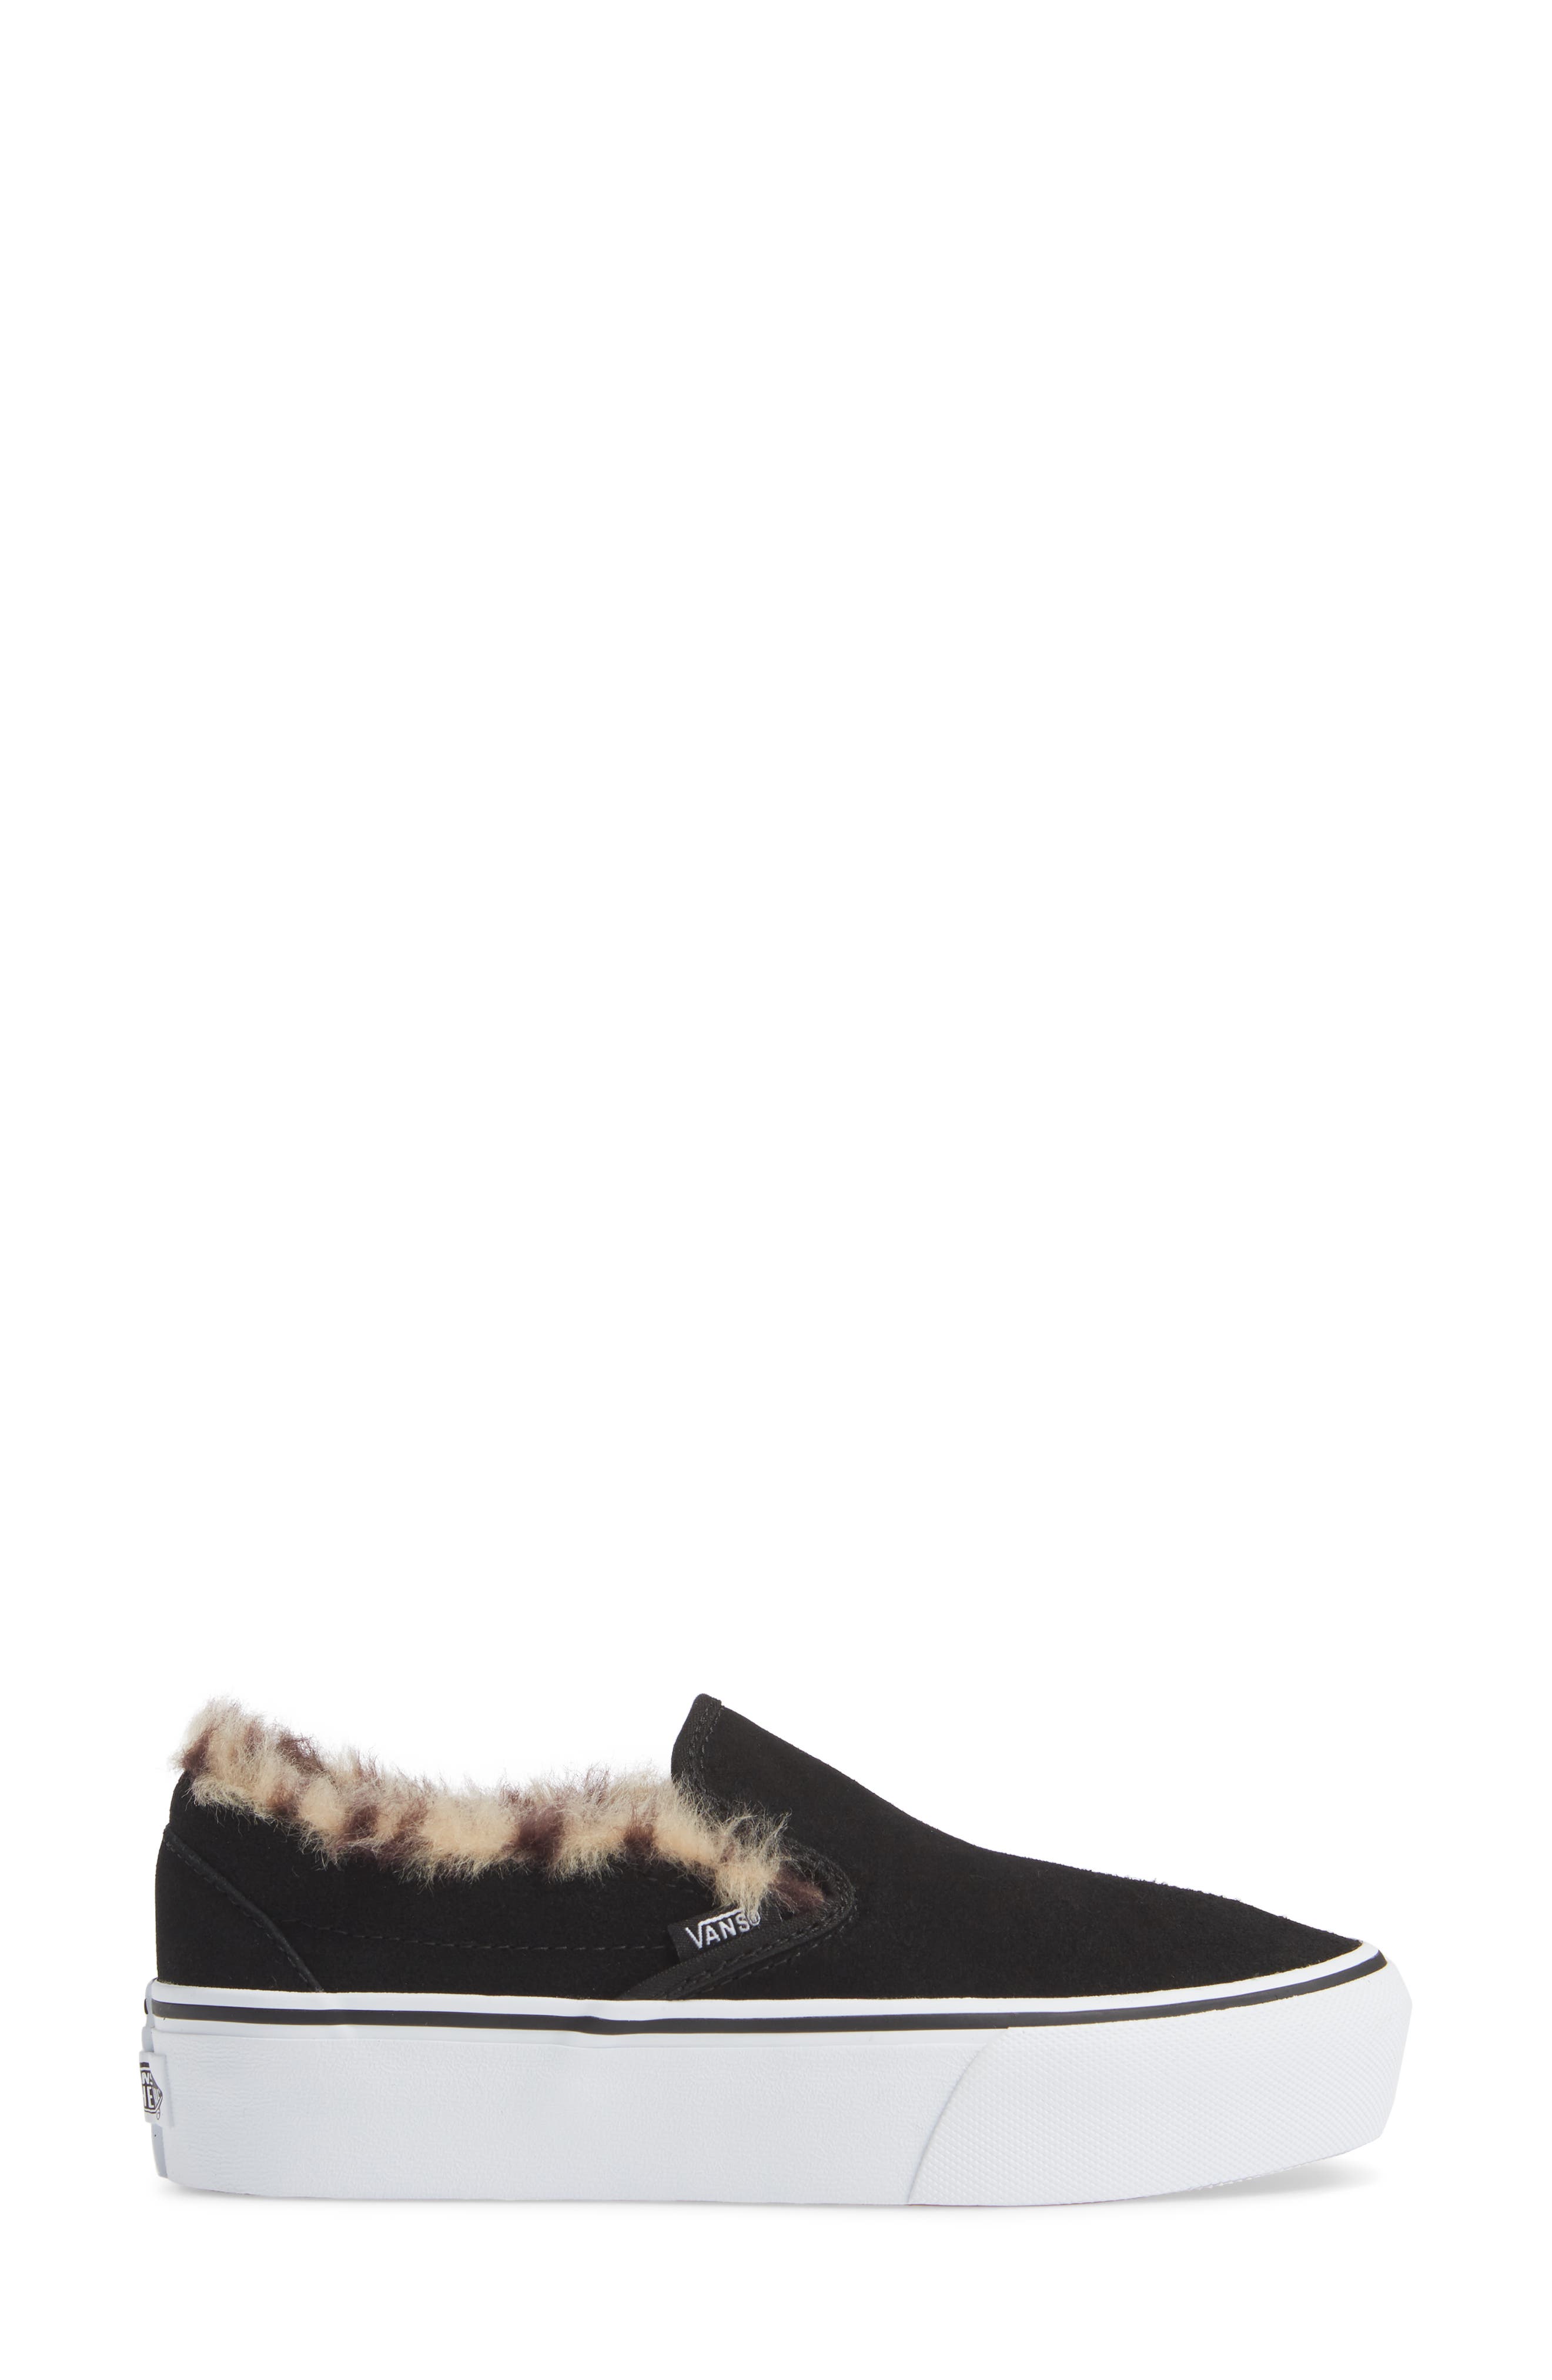 Vans Suede Slip-On Platform Fur Black Shoes - Black - 10